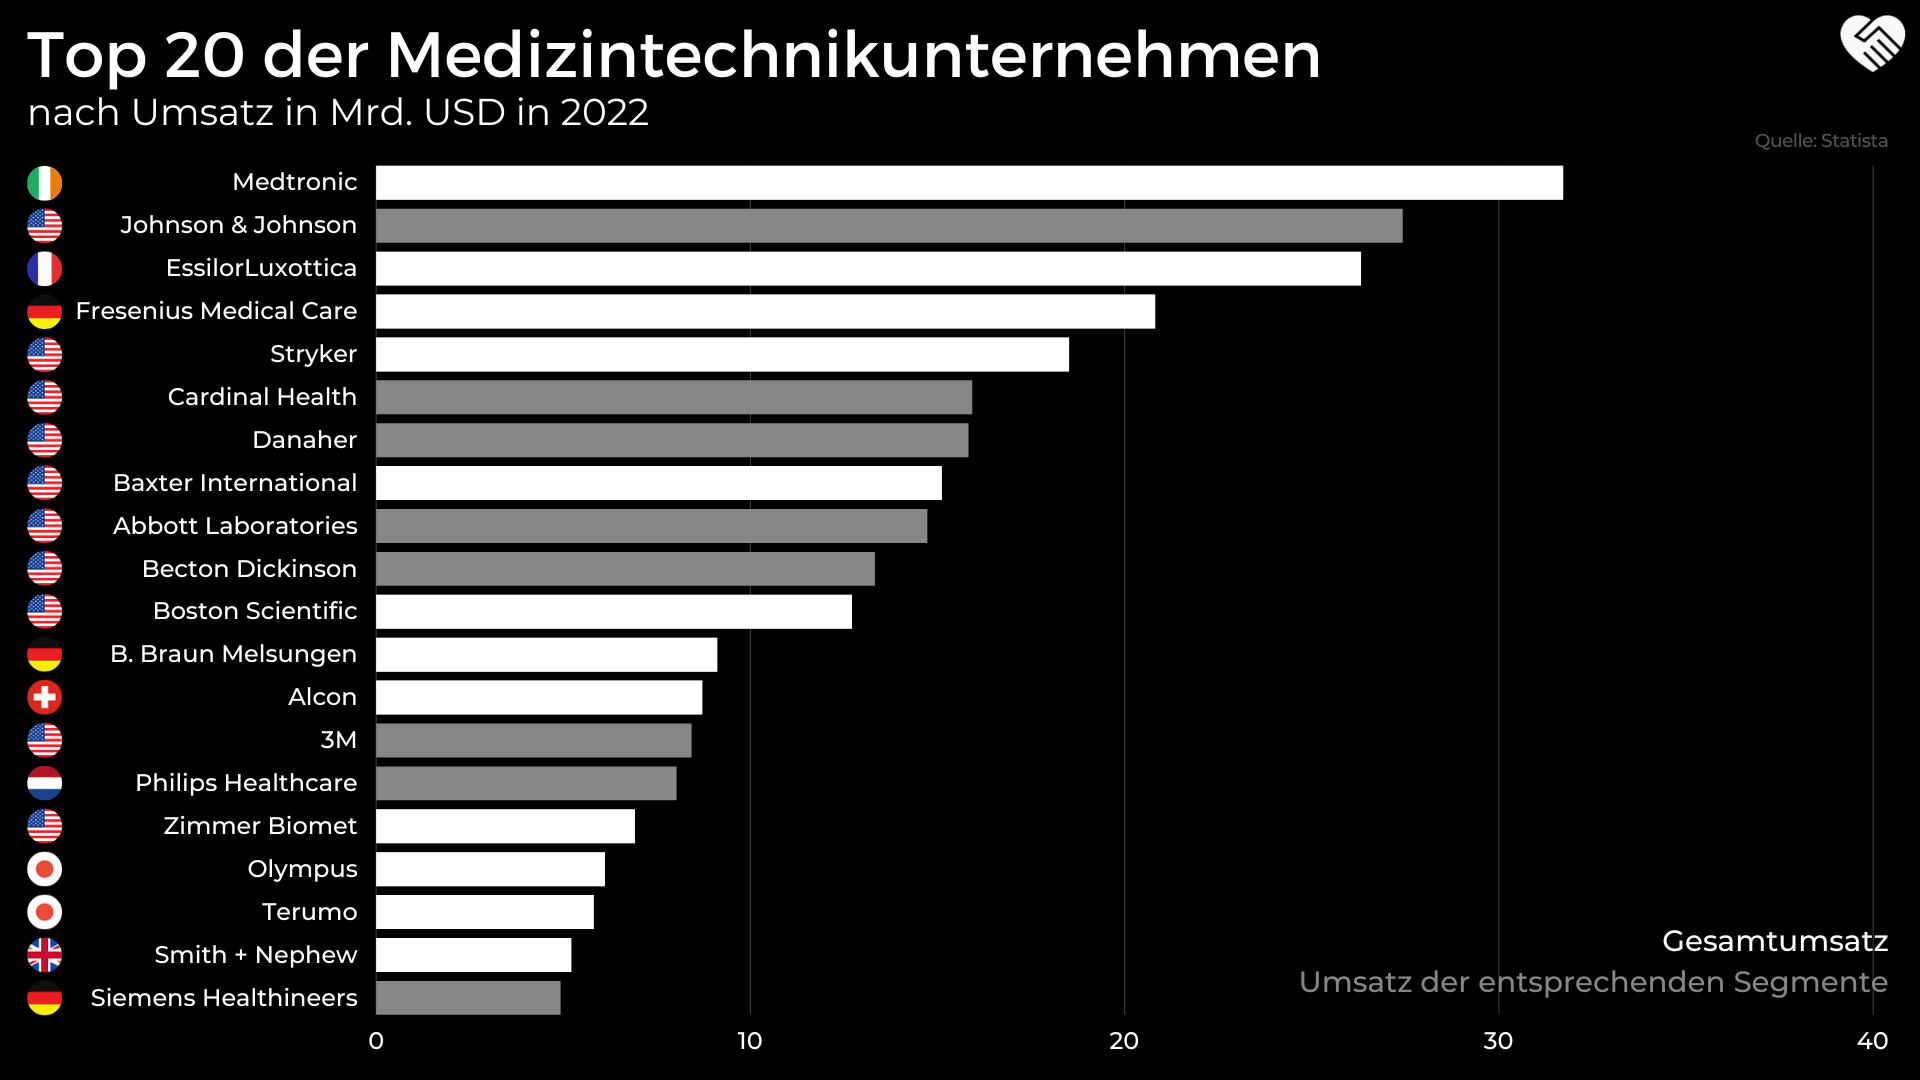 Top20 Medizintechnik Unternehmen nach Umsatz